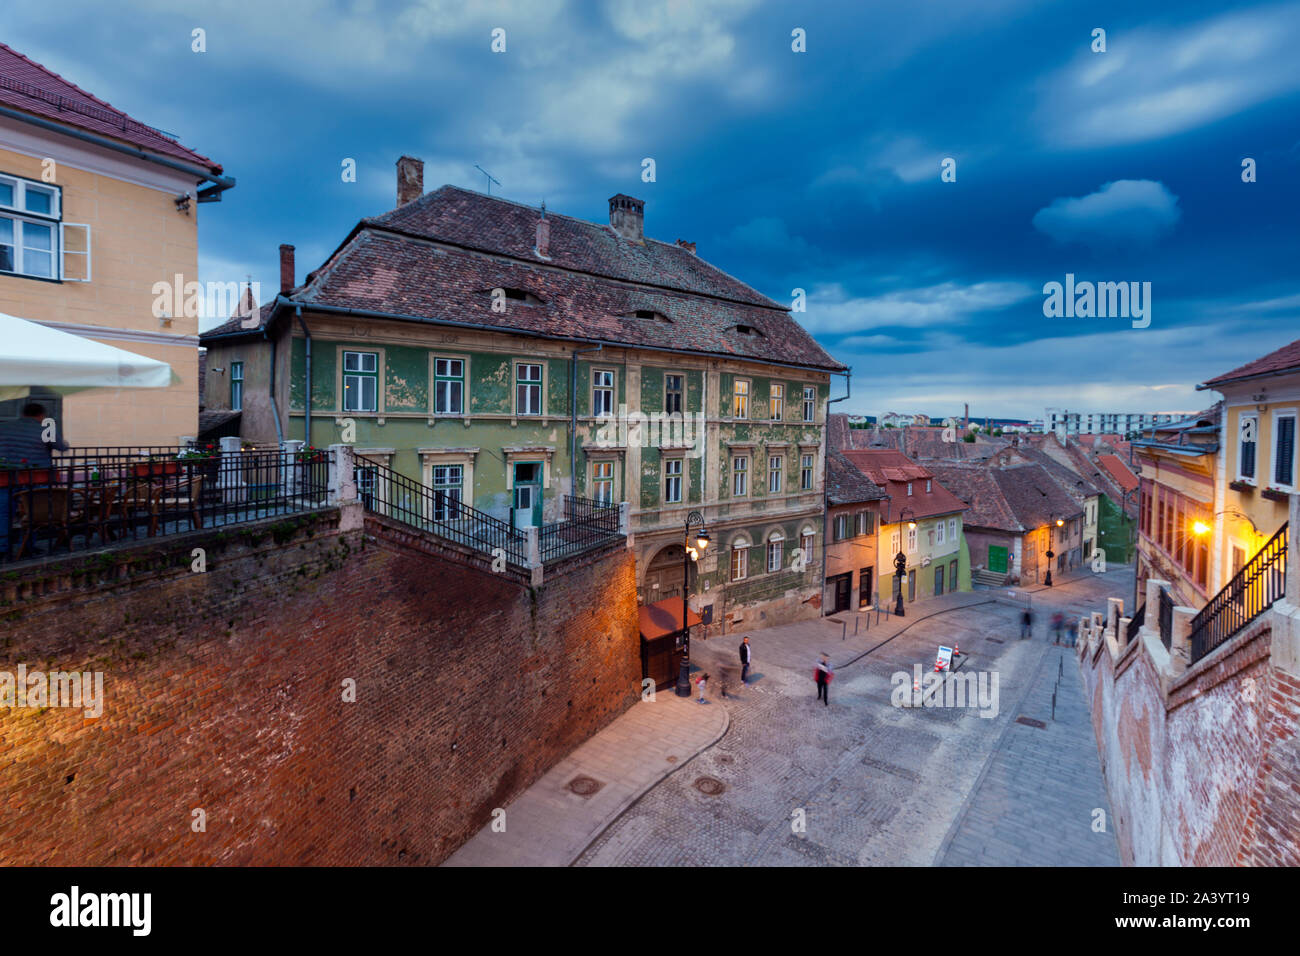 Street in old town of Sibiu, Romania Stock Photo